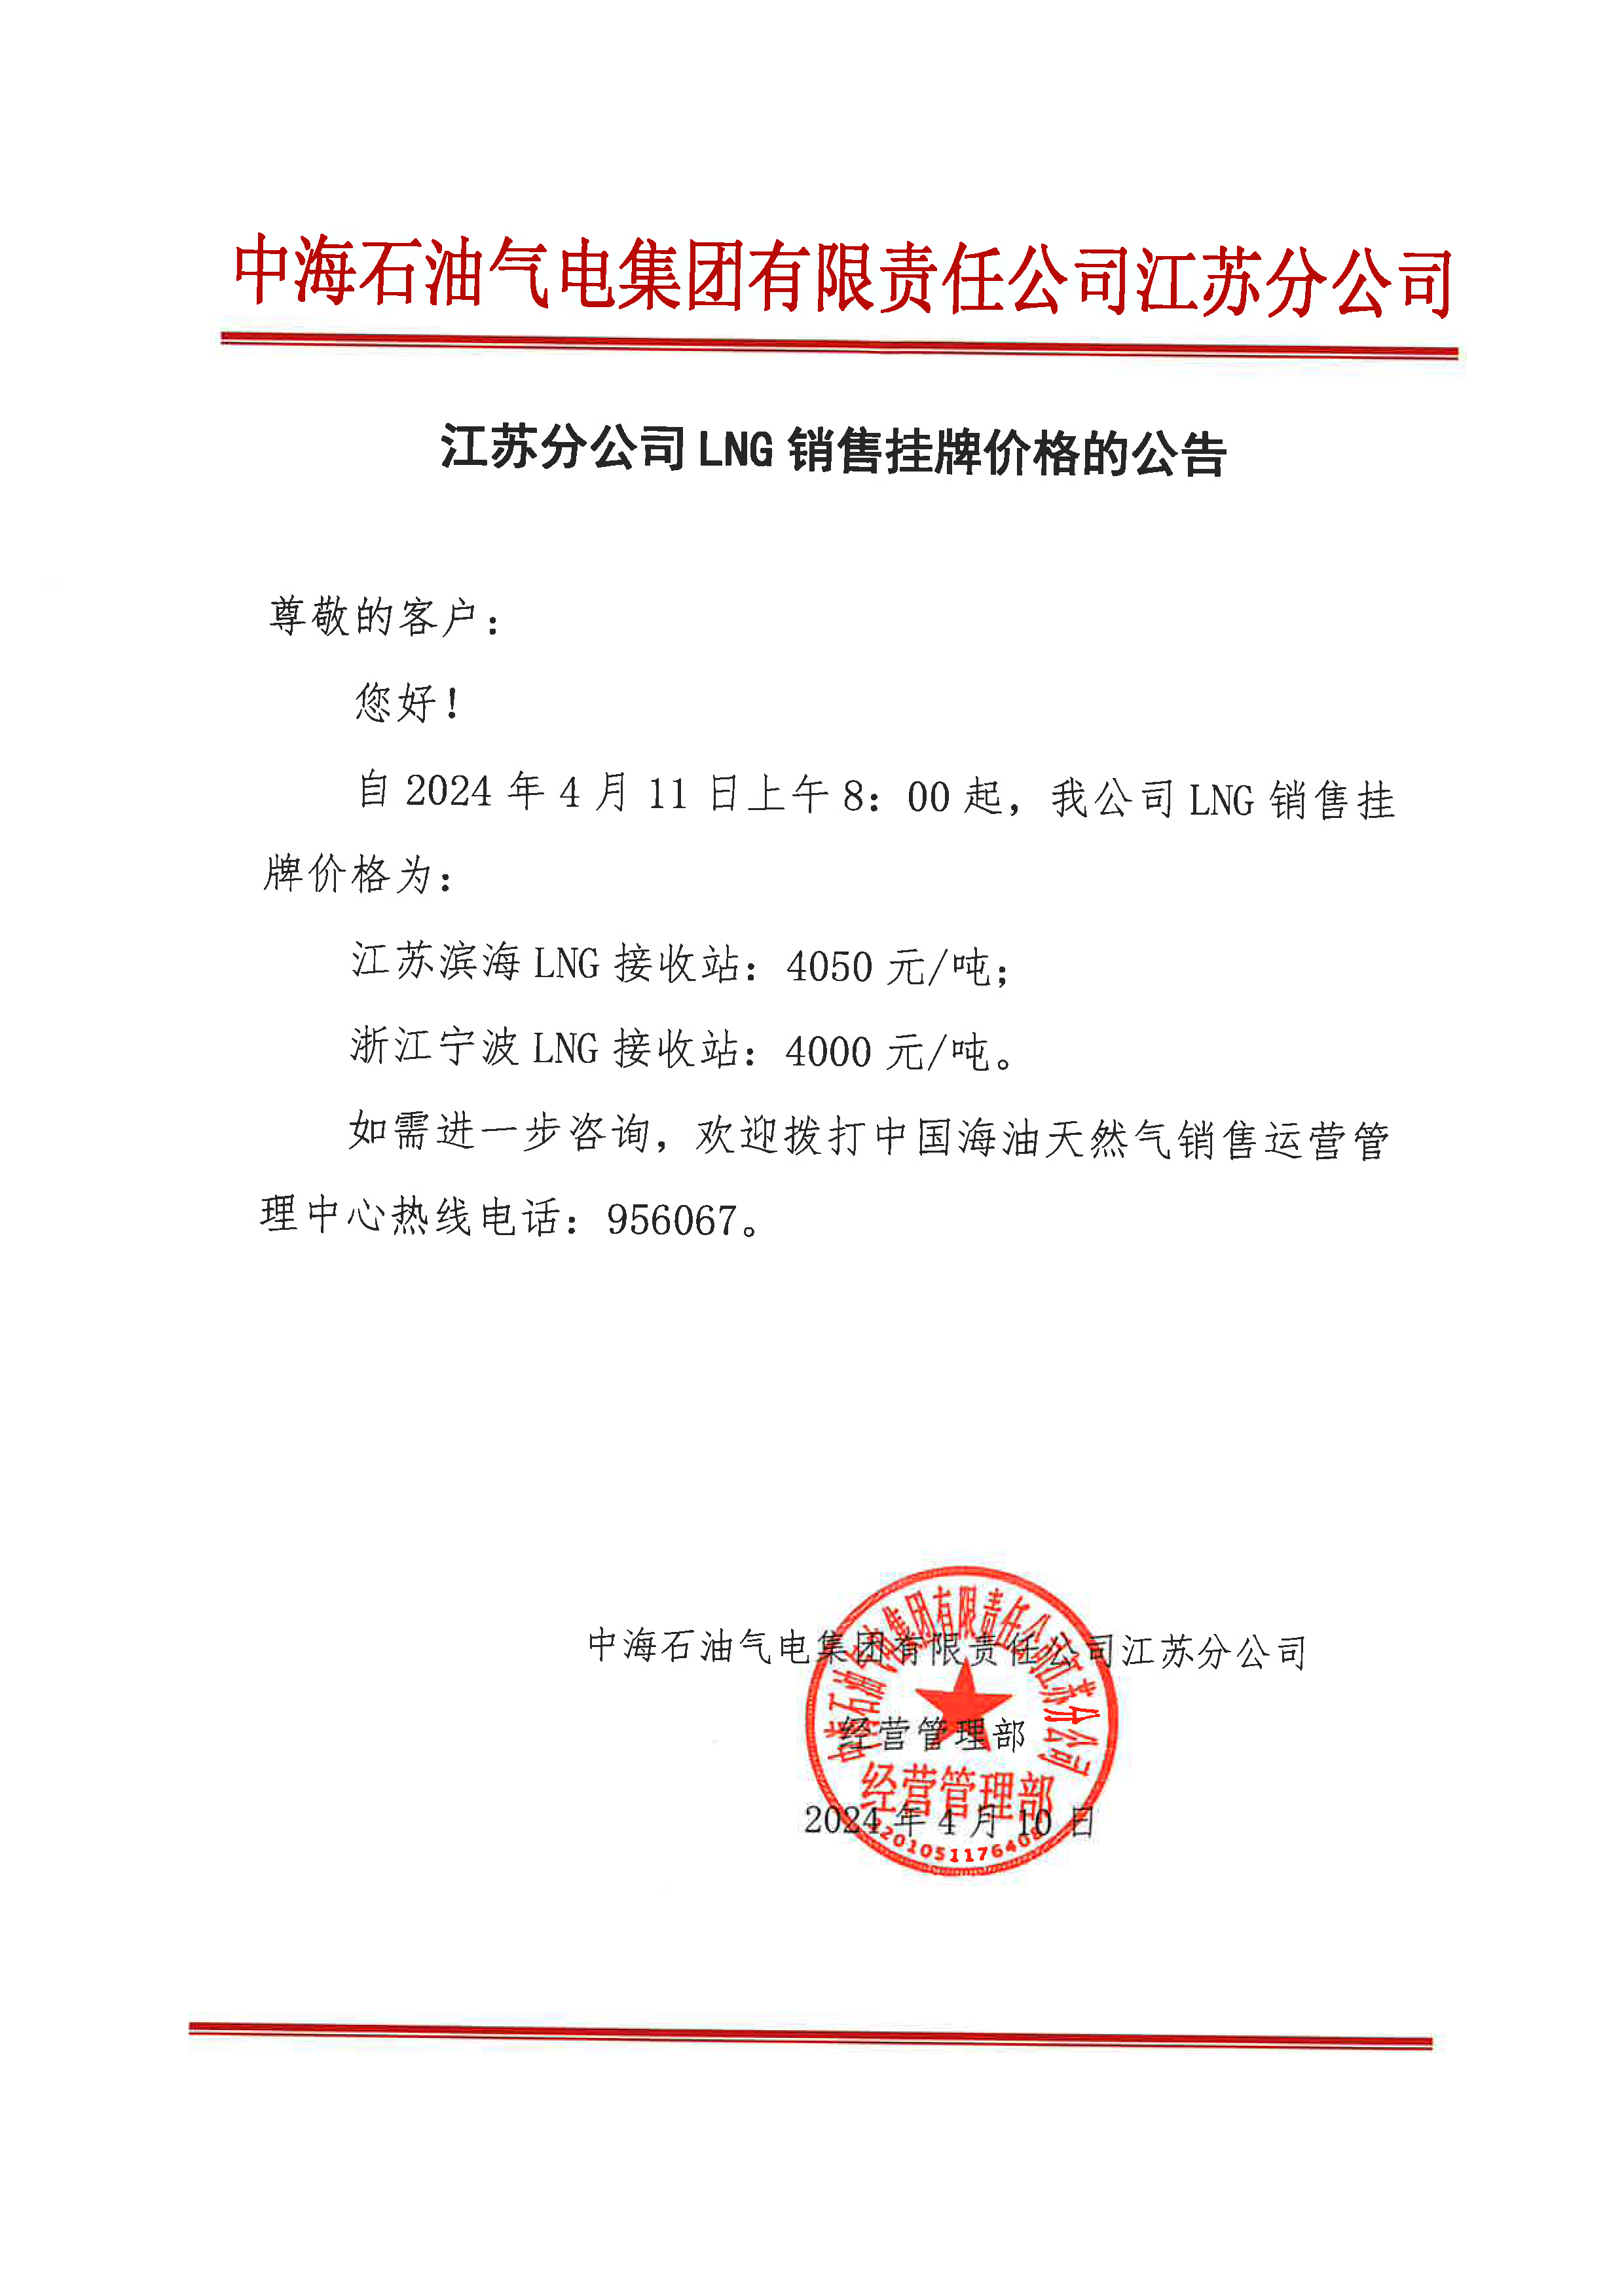 中海油江苏分公司关于4月11日华东苏皖市场价格调整公告.png